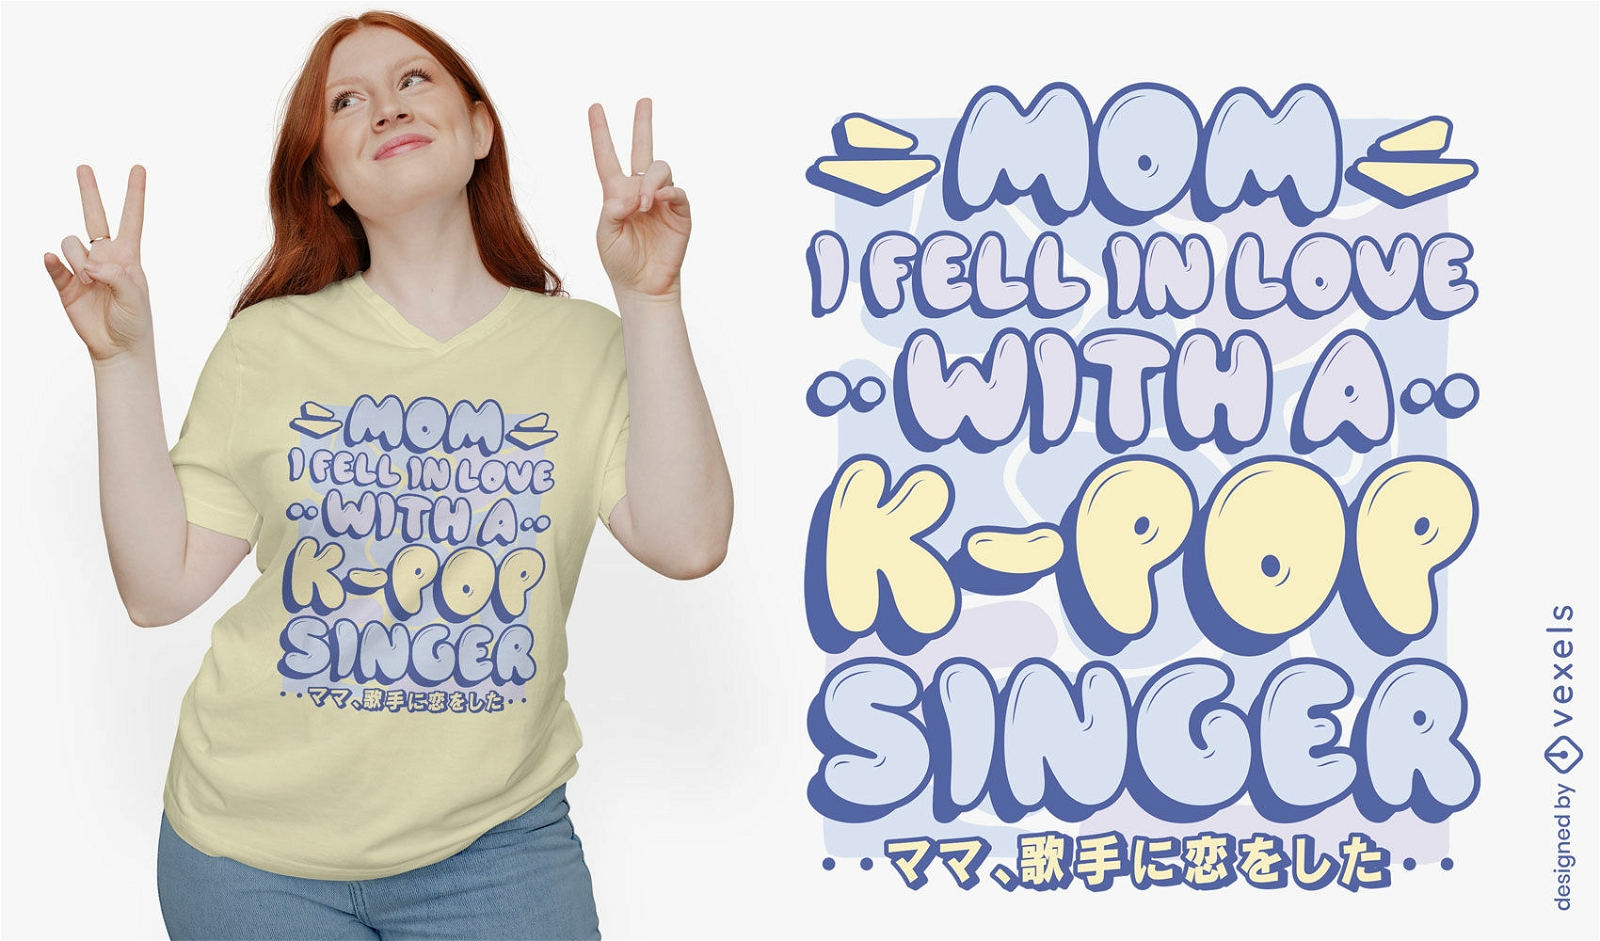 Verliebte sich in das K-Pop-T-Shirt-Design